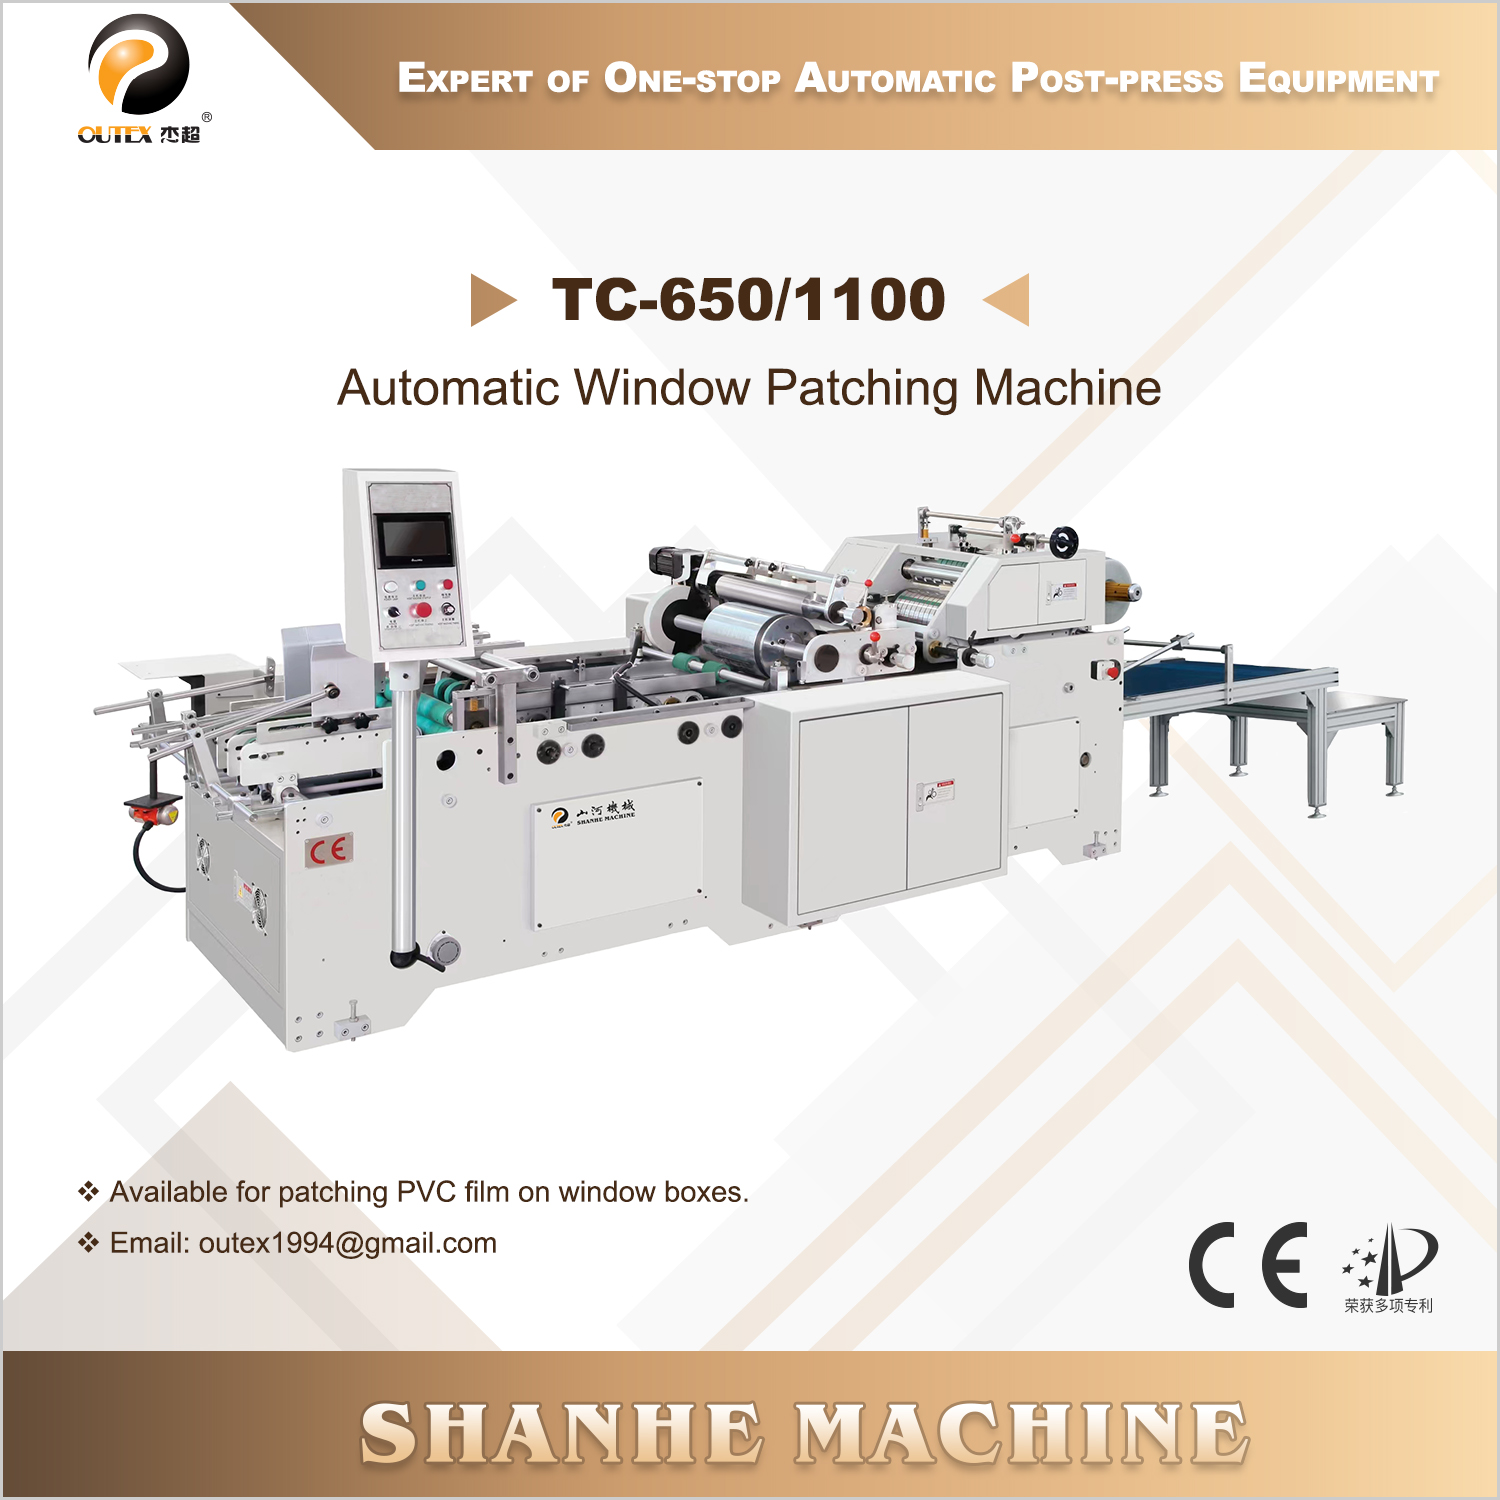 TC-650/1100 Automatic Window Patching Machine